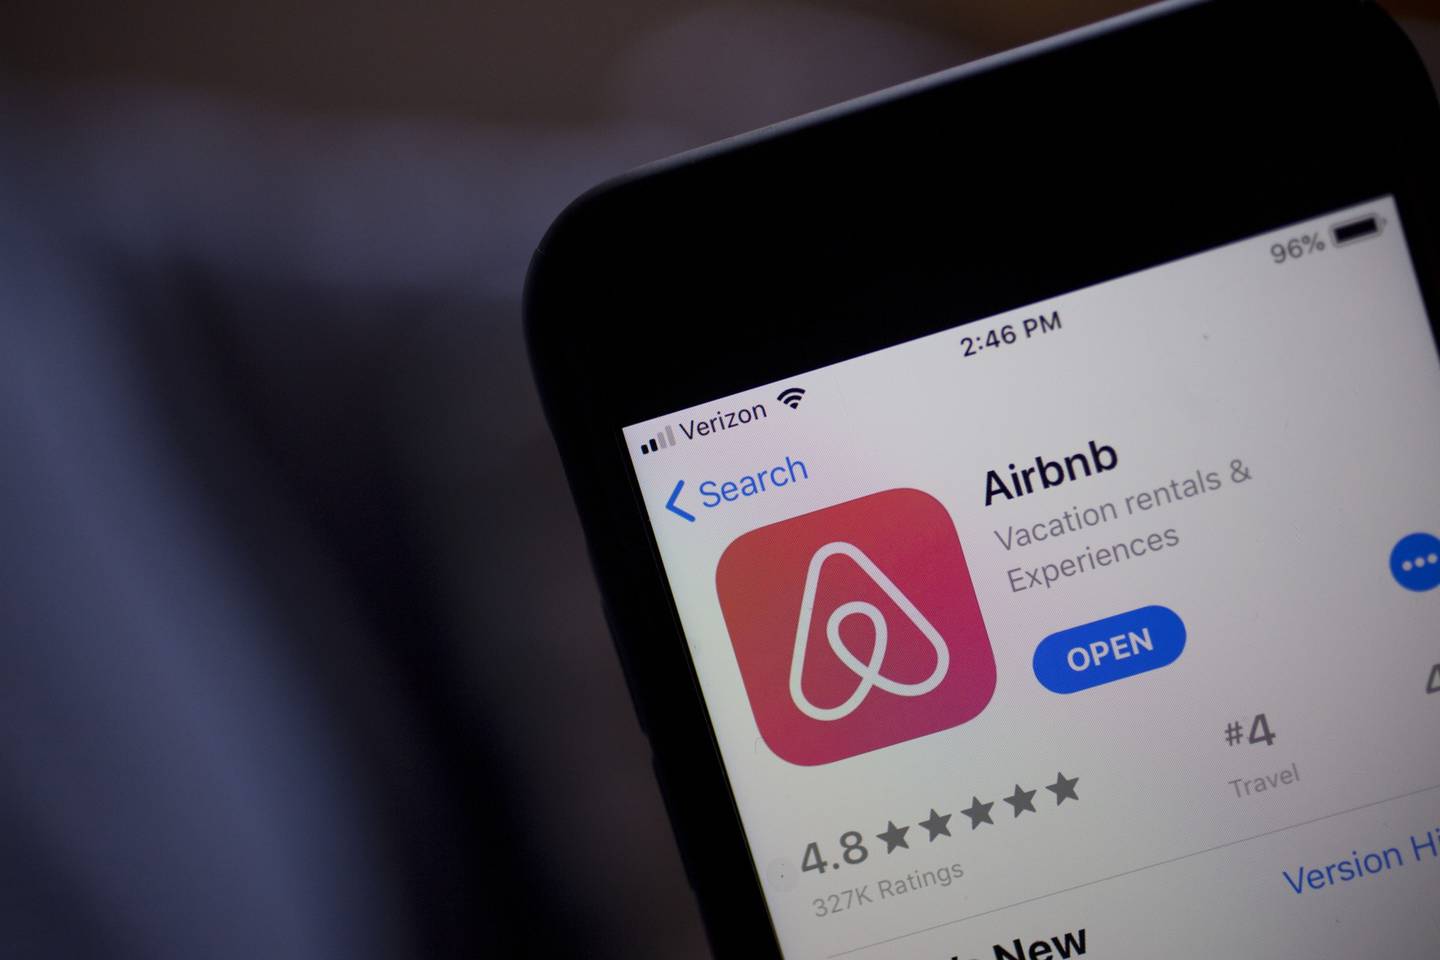 La aplicación de Airbnb Inc. se muestra en la App Store en un iPhone de Apple Inc. en una fotografía arreglada tomada en Arlington, Virginia, EE.UU., el viernes 8 de marzo de 2019.